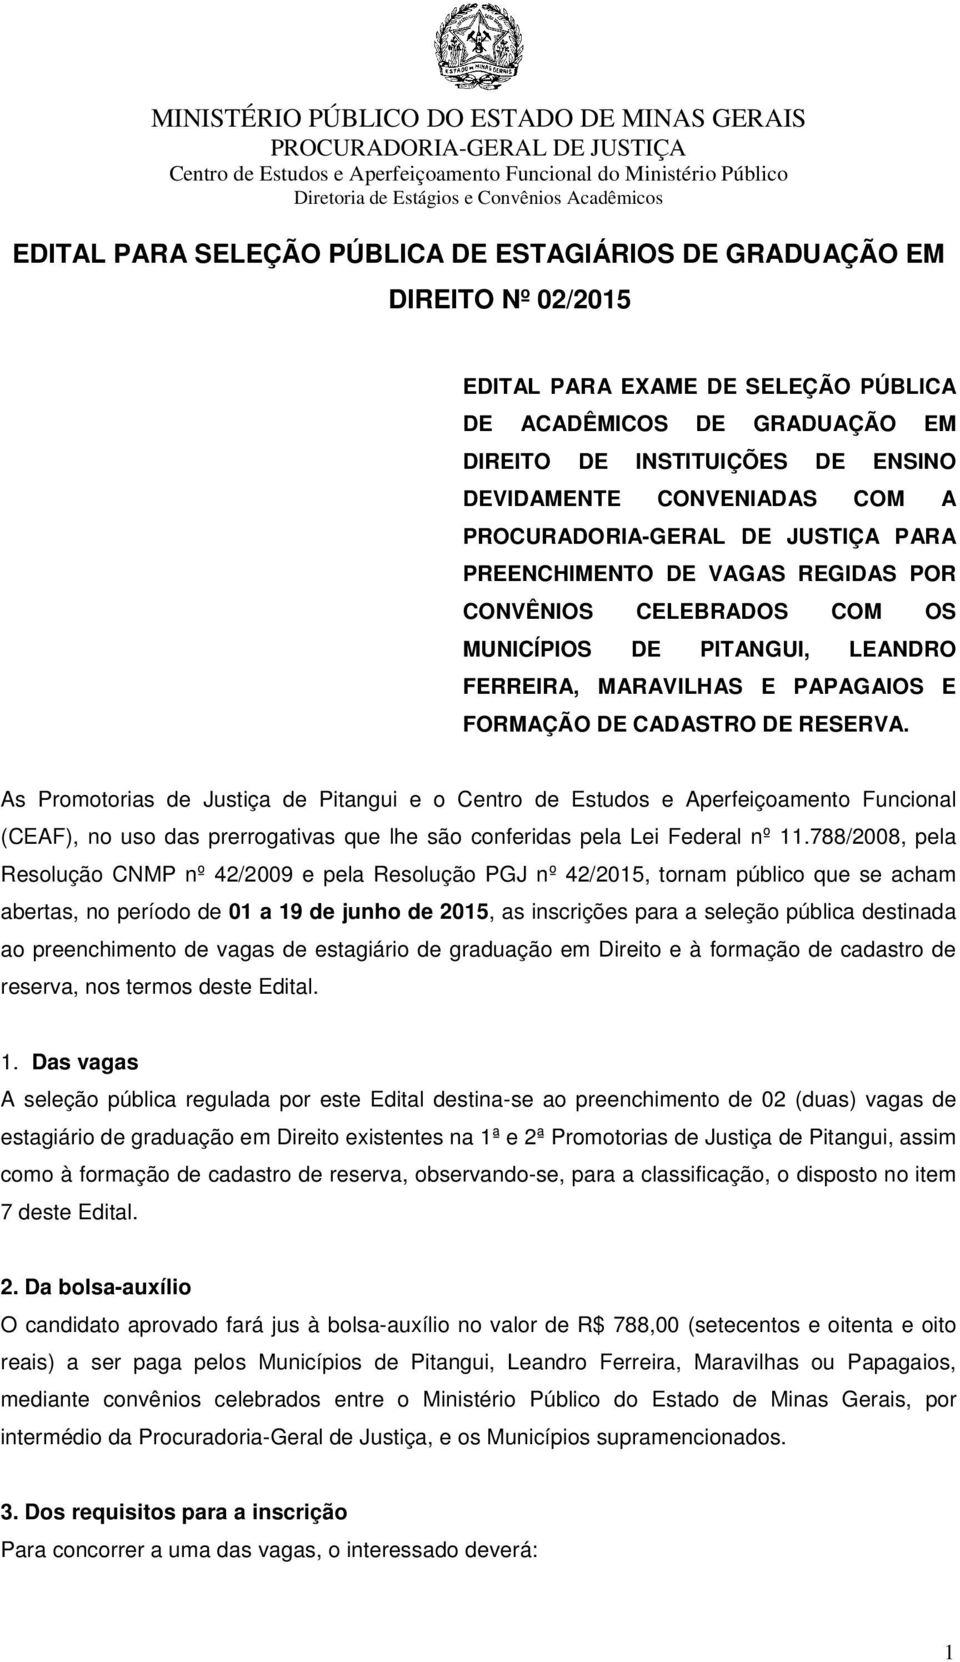 As Promotorias de Justiça de Pitangui e o Centro de Estudos e Aperfeiçoamento Funcional (CEAF), no uso das prerrogativas que lhe são conferidas pela Lei Federal nº 11.